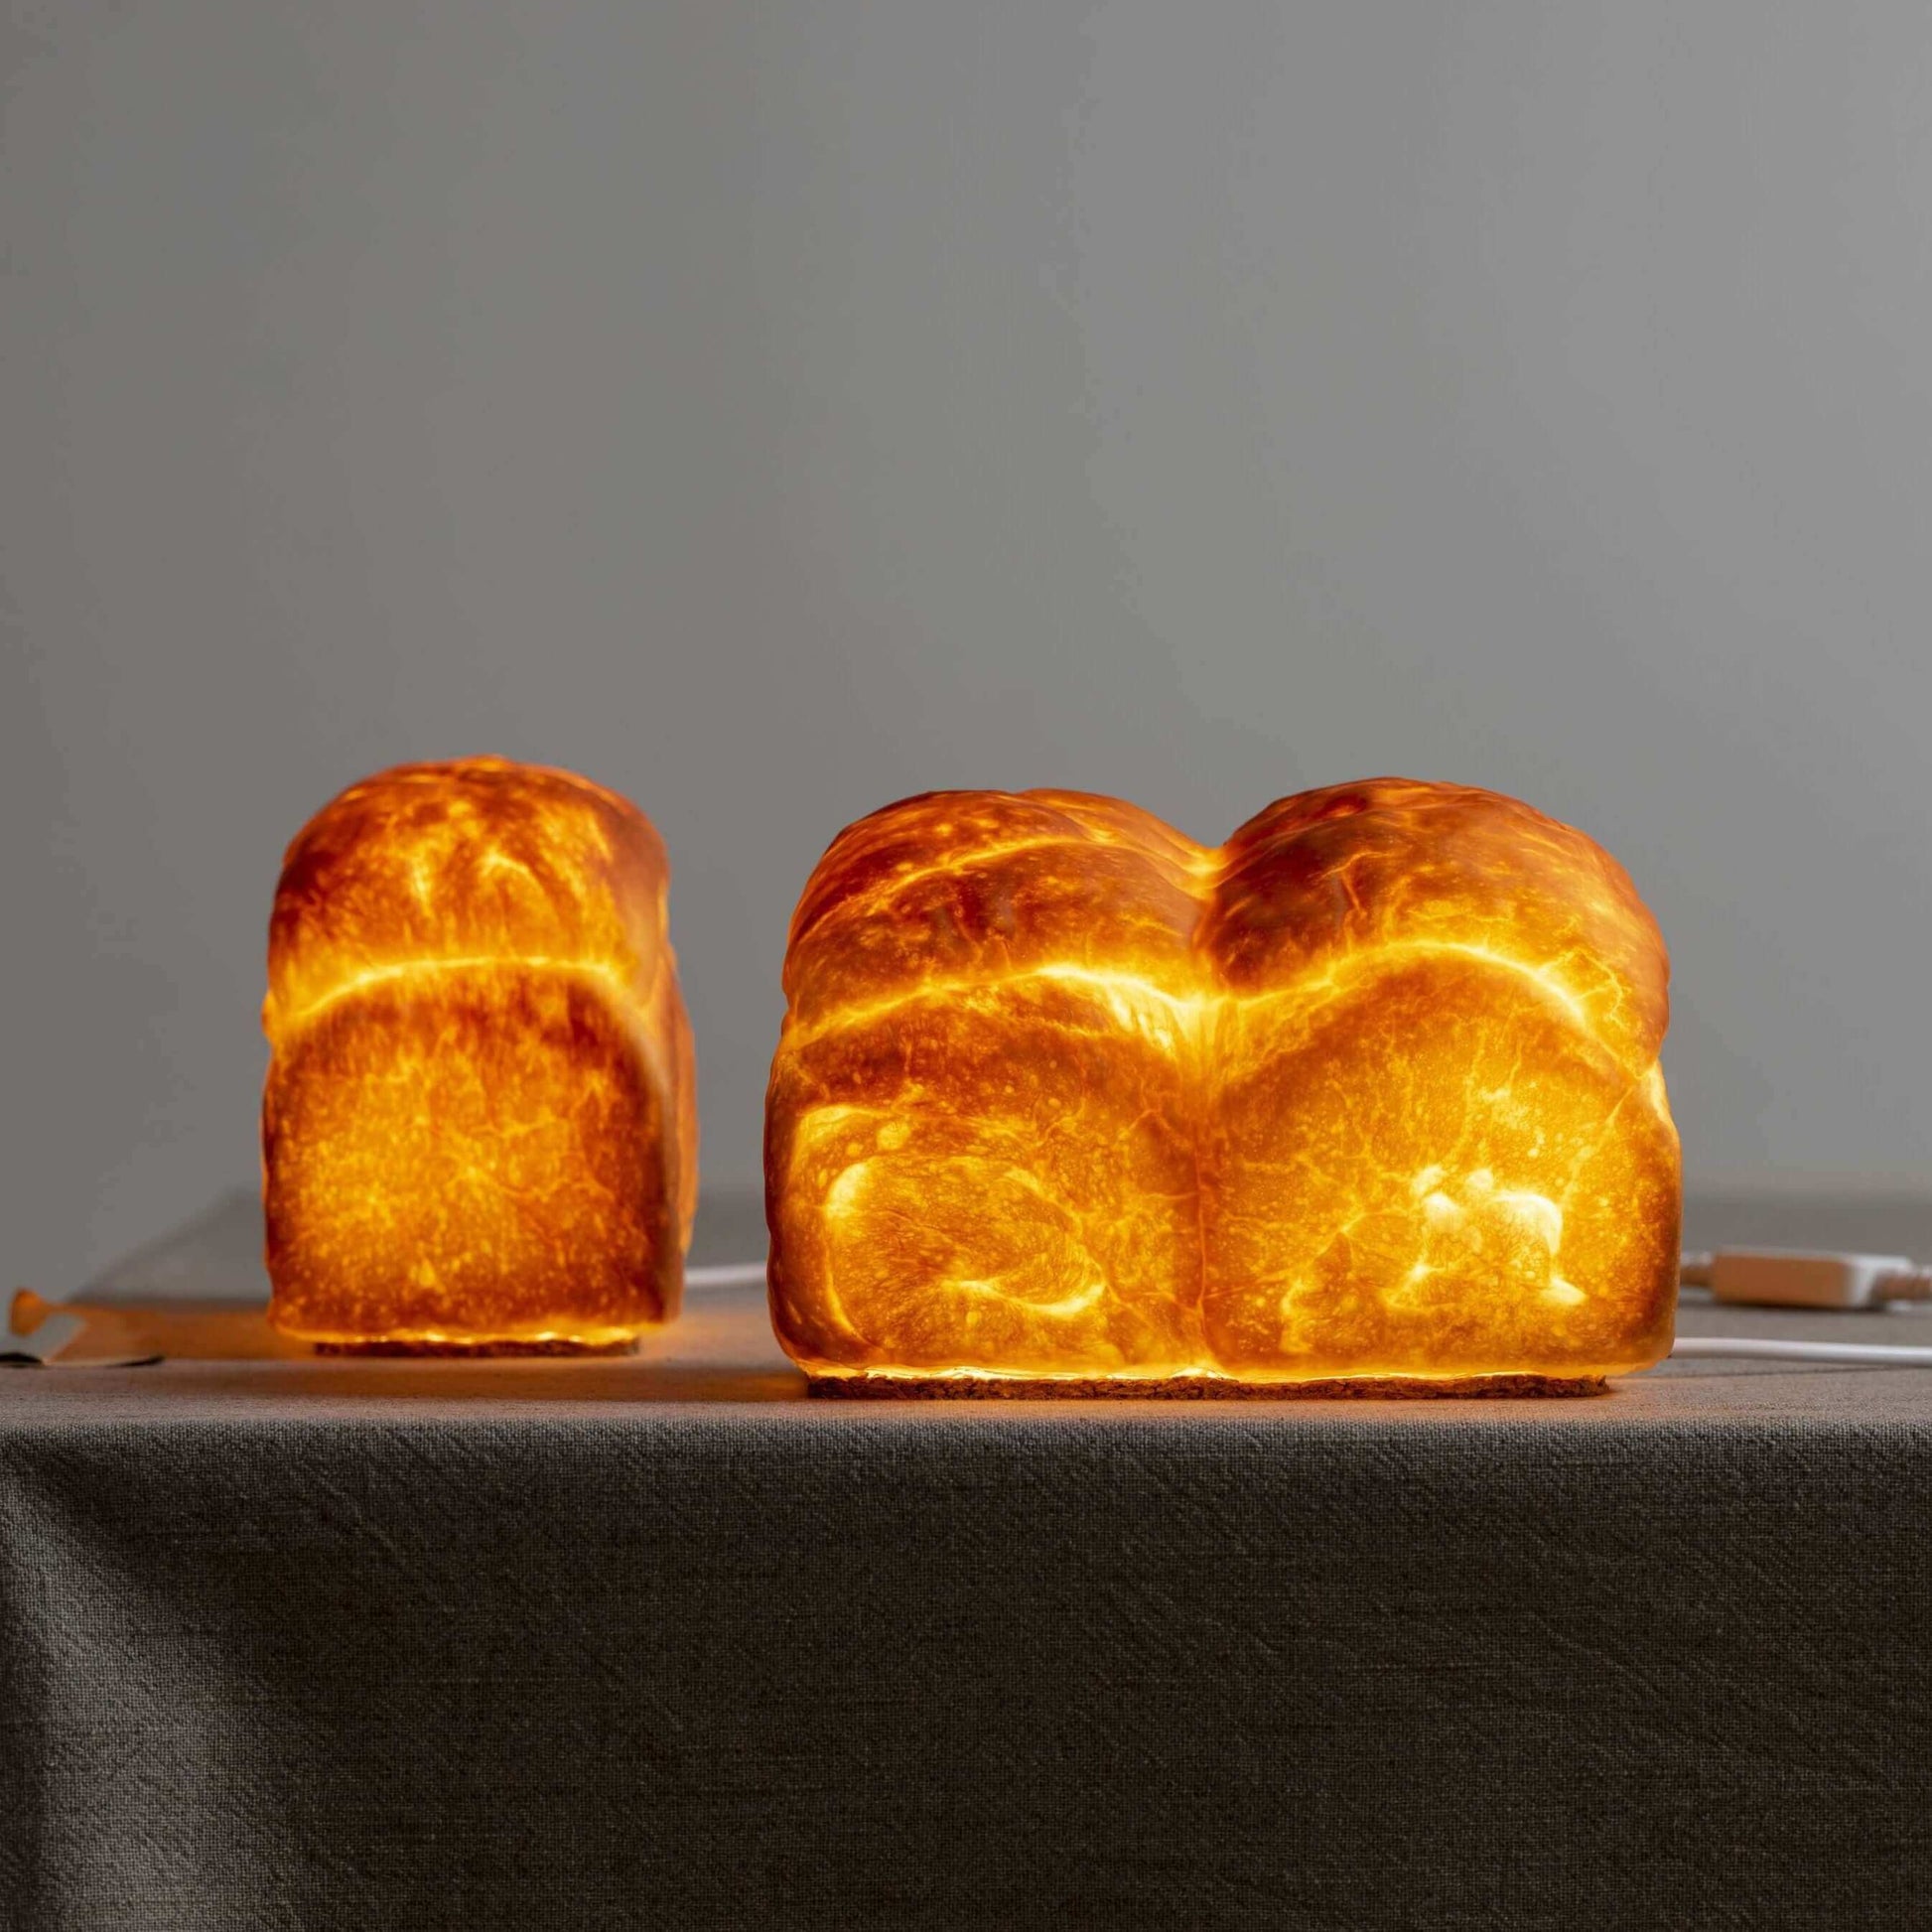 パン・ド・ミ Bread Lamp （コンセントタイプ）| PAMPSHADE | Yukiko Morita PAMPSHADE Online shop